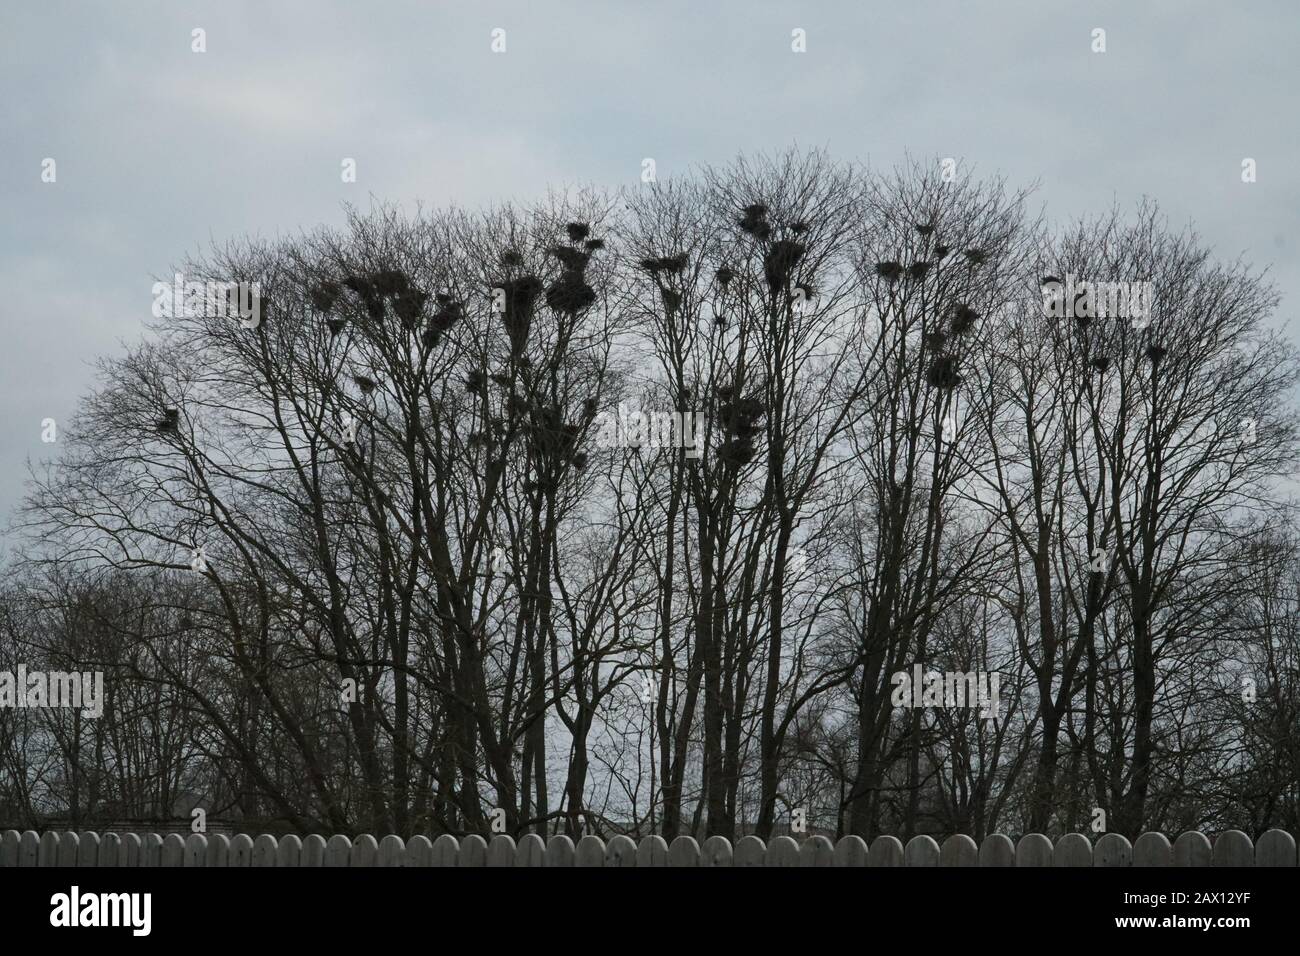 Alberi nudi con nidi visibili di uccelli corvi nei rami. Incredibile sfondo natura dietro le tavole da recinzione nel giorno nuvoloso d'inverno. Foto Stock